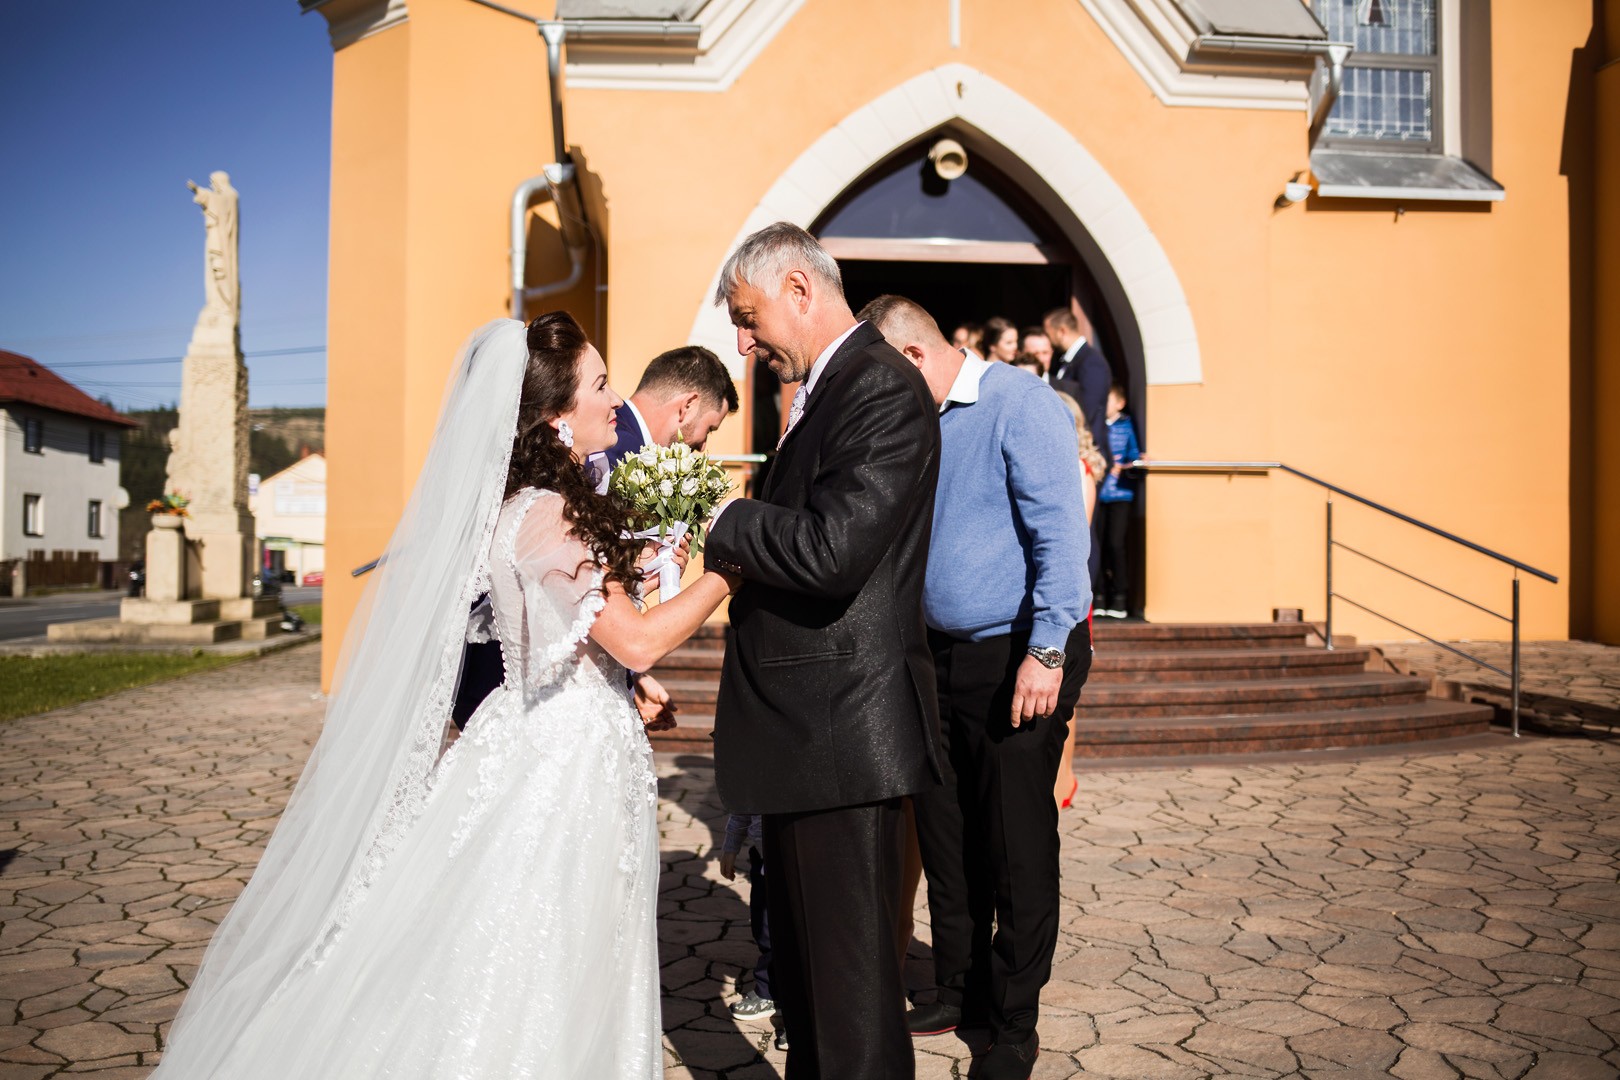 Wedding photos Zdenka and Marko - 0150.jpg